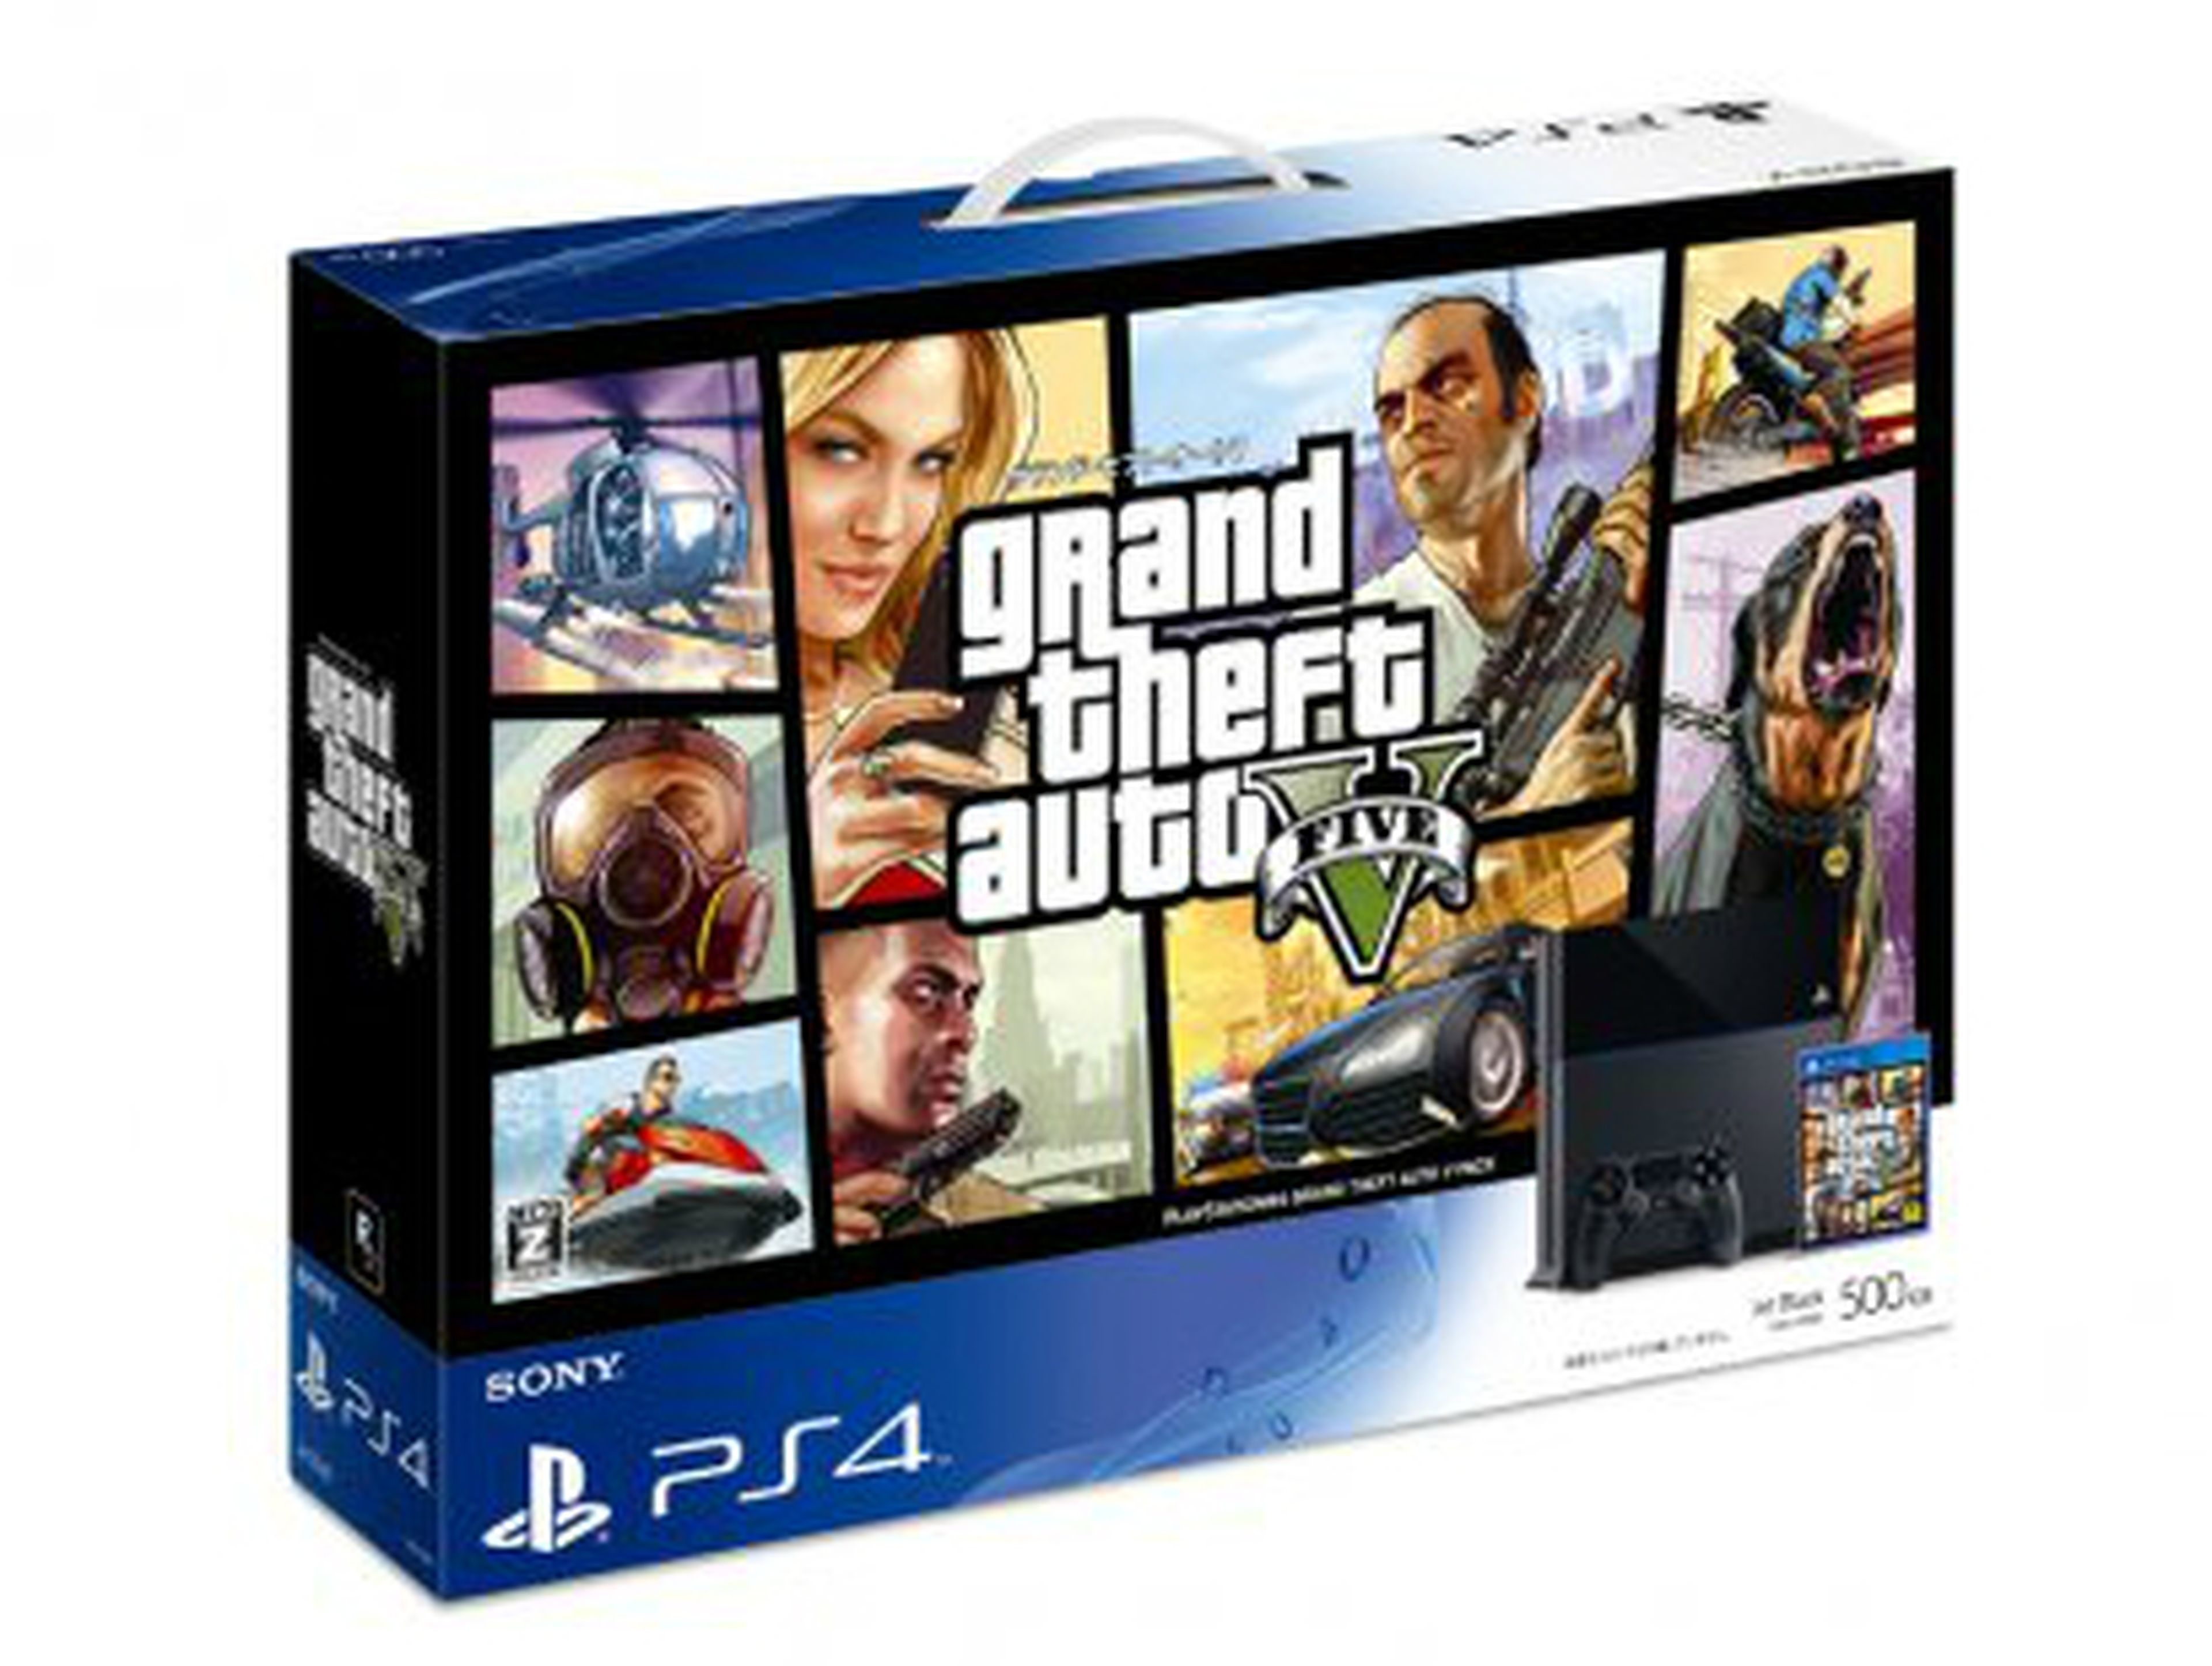 Confirmado el pack de PS4 y Grand Theft Auto V en Japón